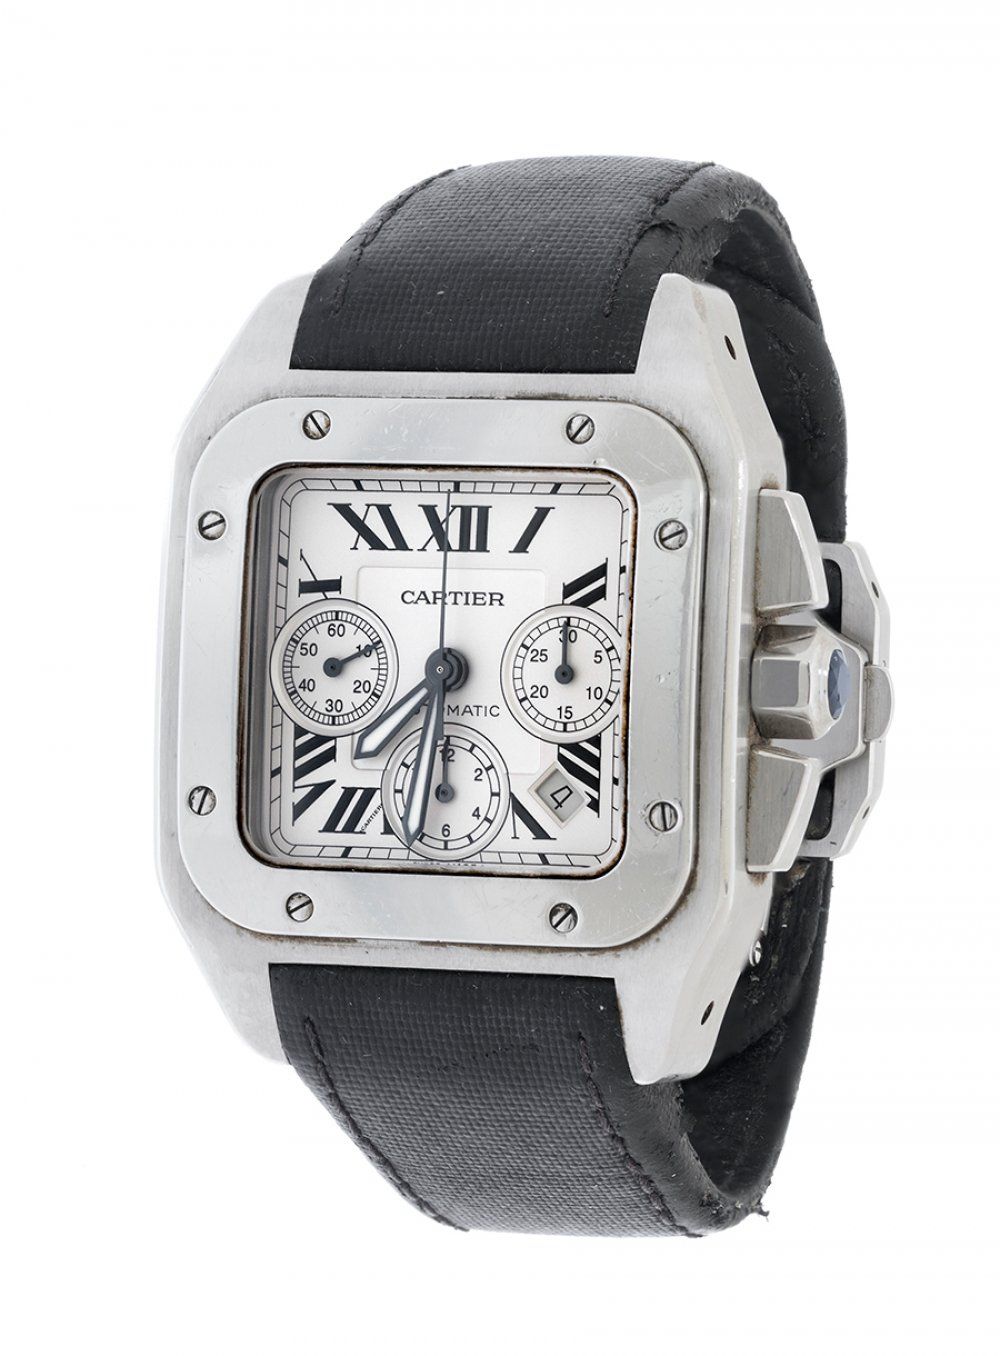 Null Reloj CARTIER Santos 100 XL Chrono, mod. 2740, ref. 842560XX, para hombre.
&hellip;